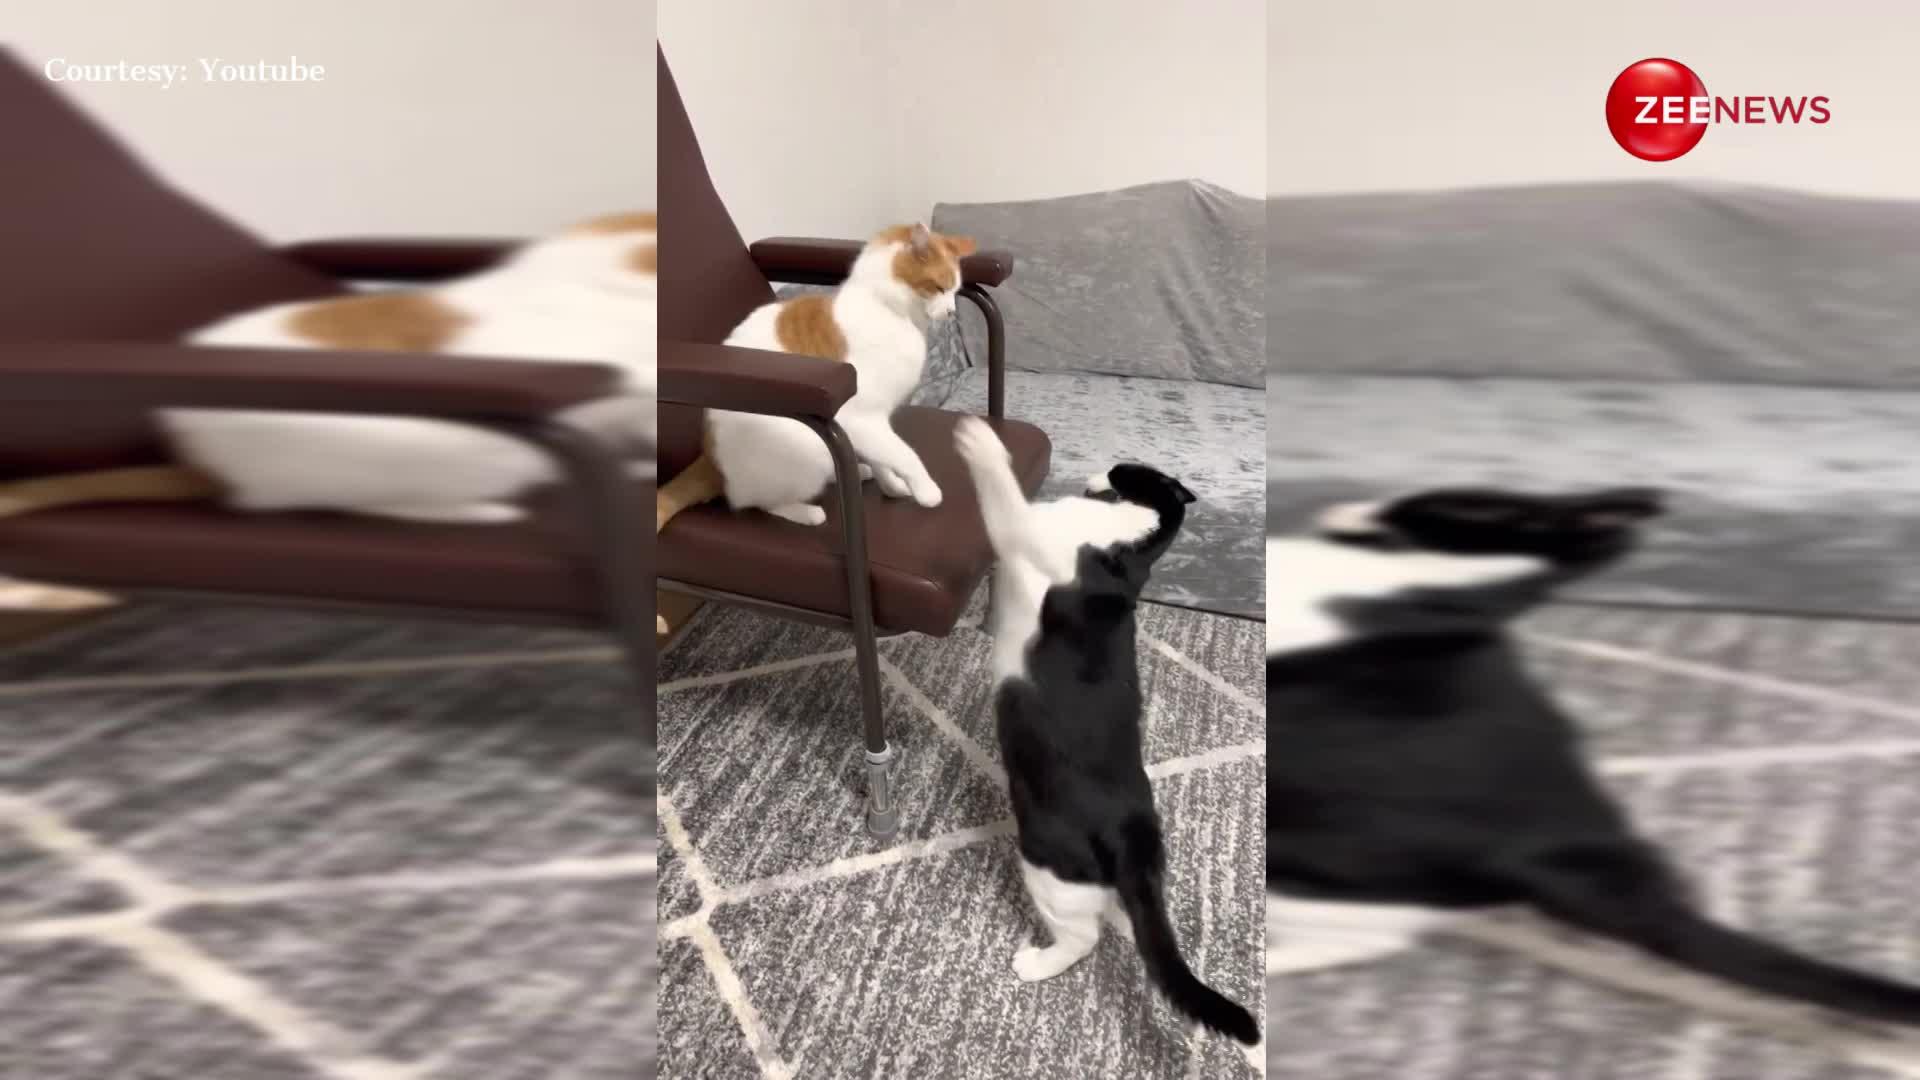 कुर्सी को लेकर दो बिल्लियों में हुई जबरदस्त लड़ाई फाइट का ये वीडियो हुआ वायरल